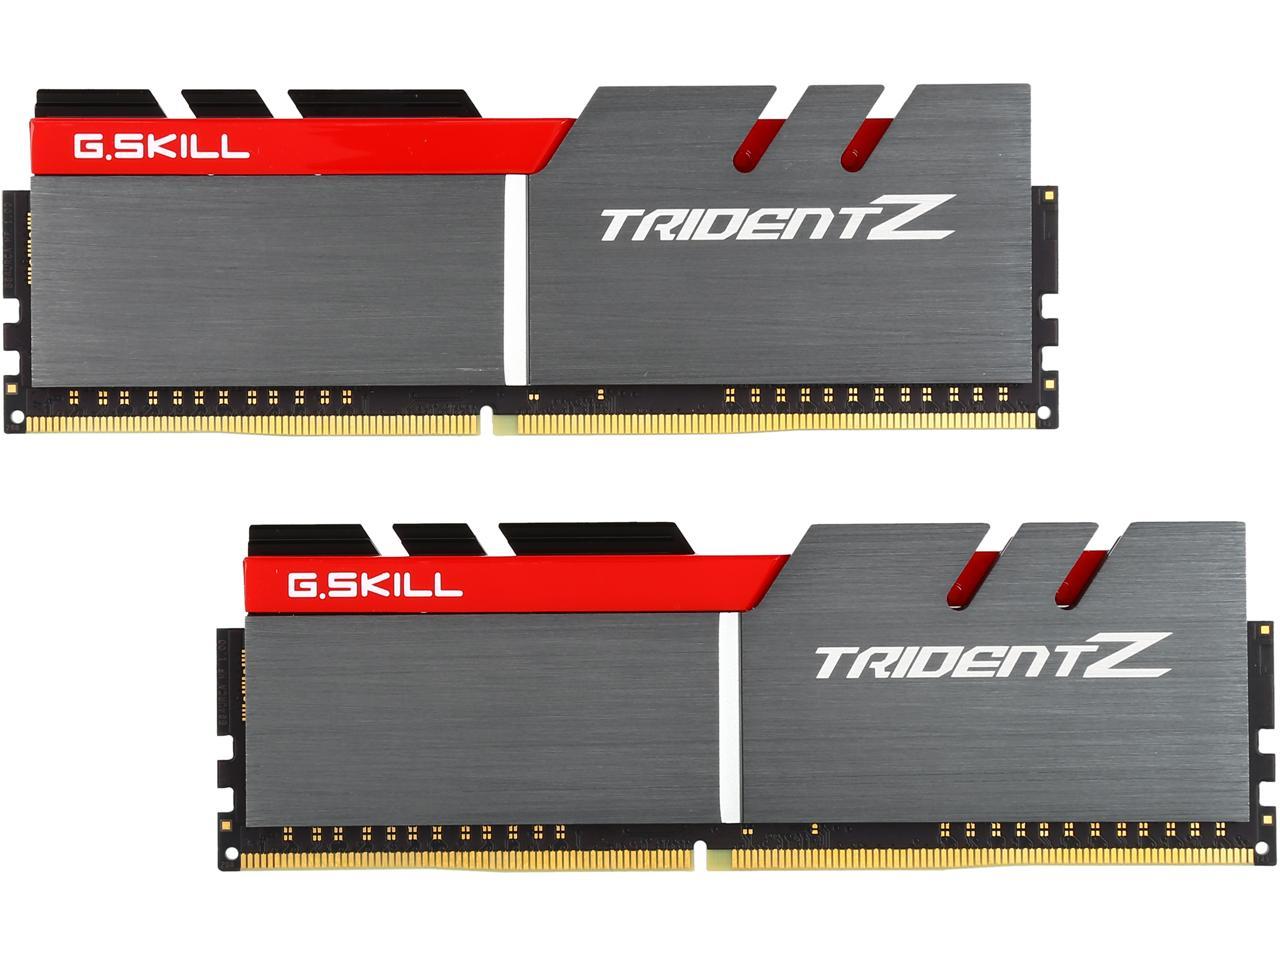 G.SKILL TridentZ Series 16GB (2 x 8GB) DDR4 3200 (PC4 25600 